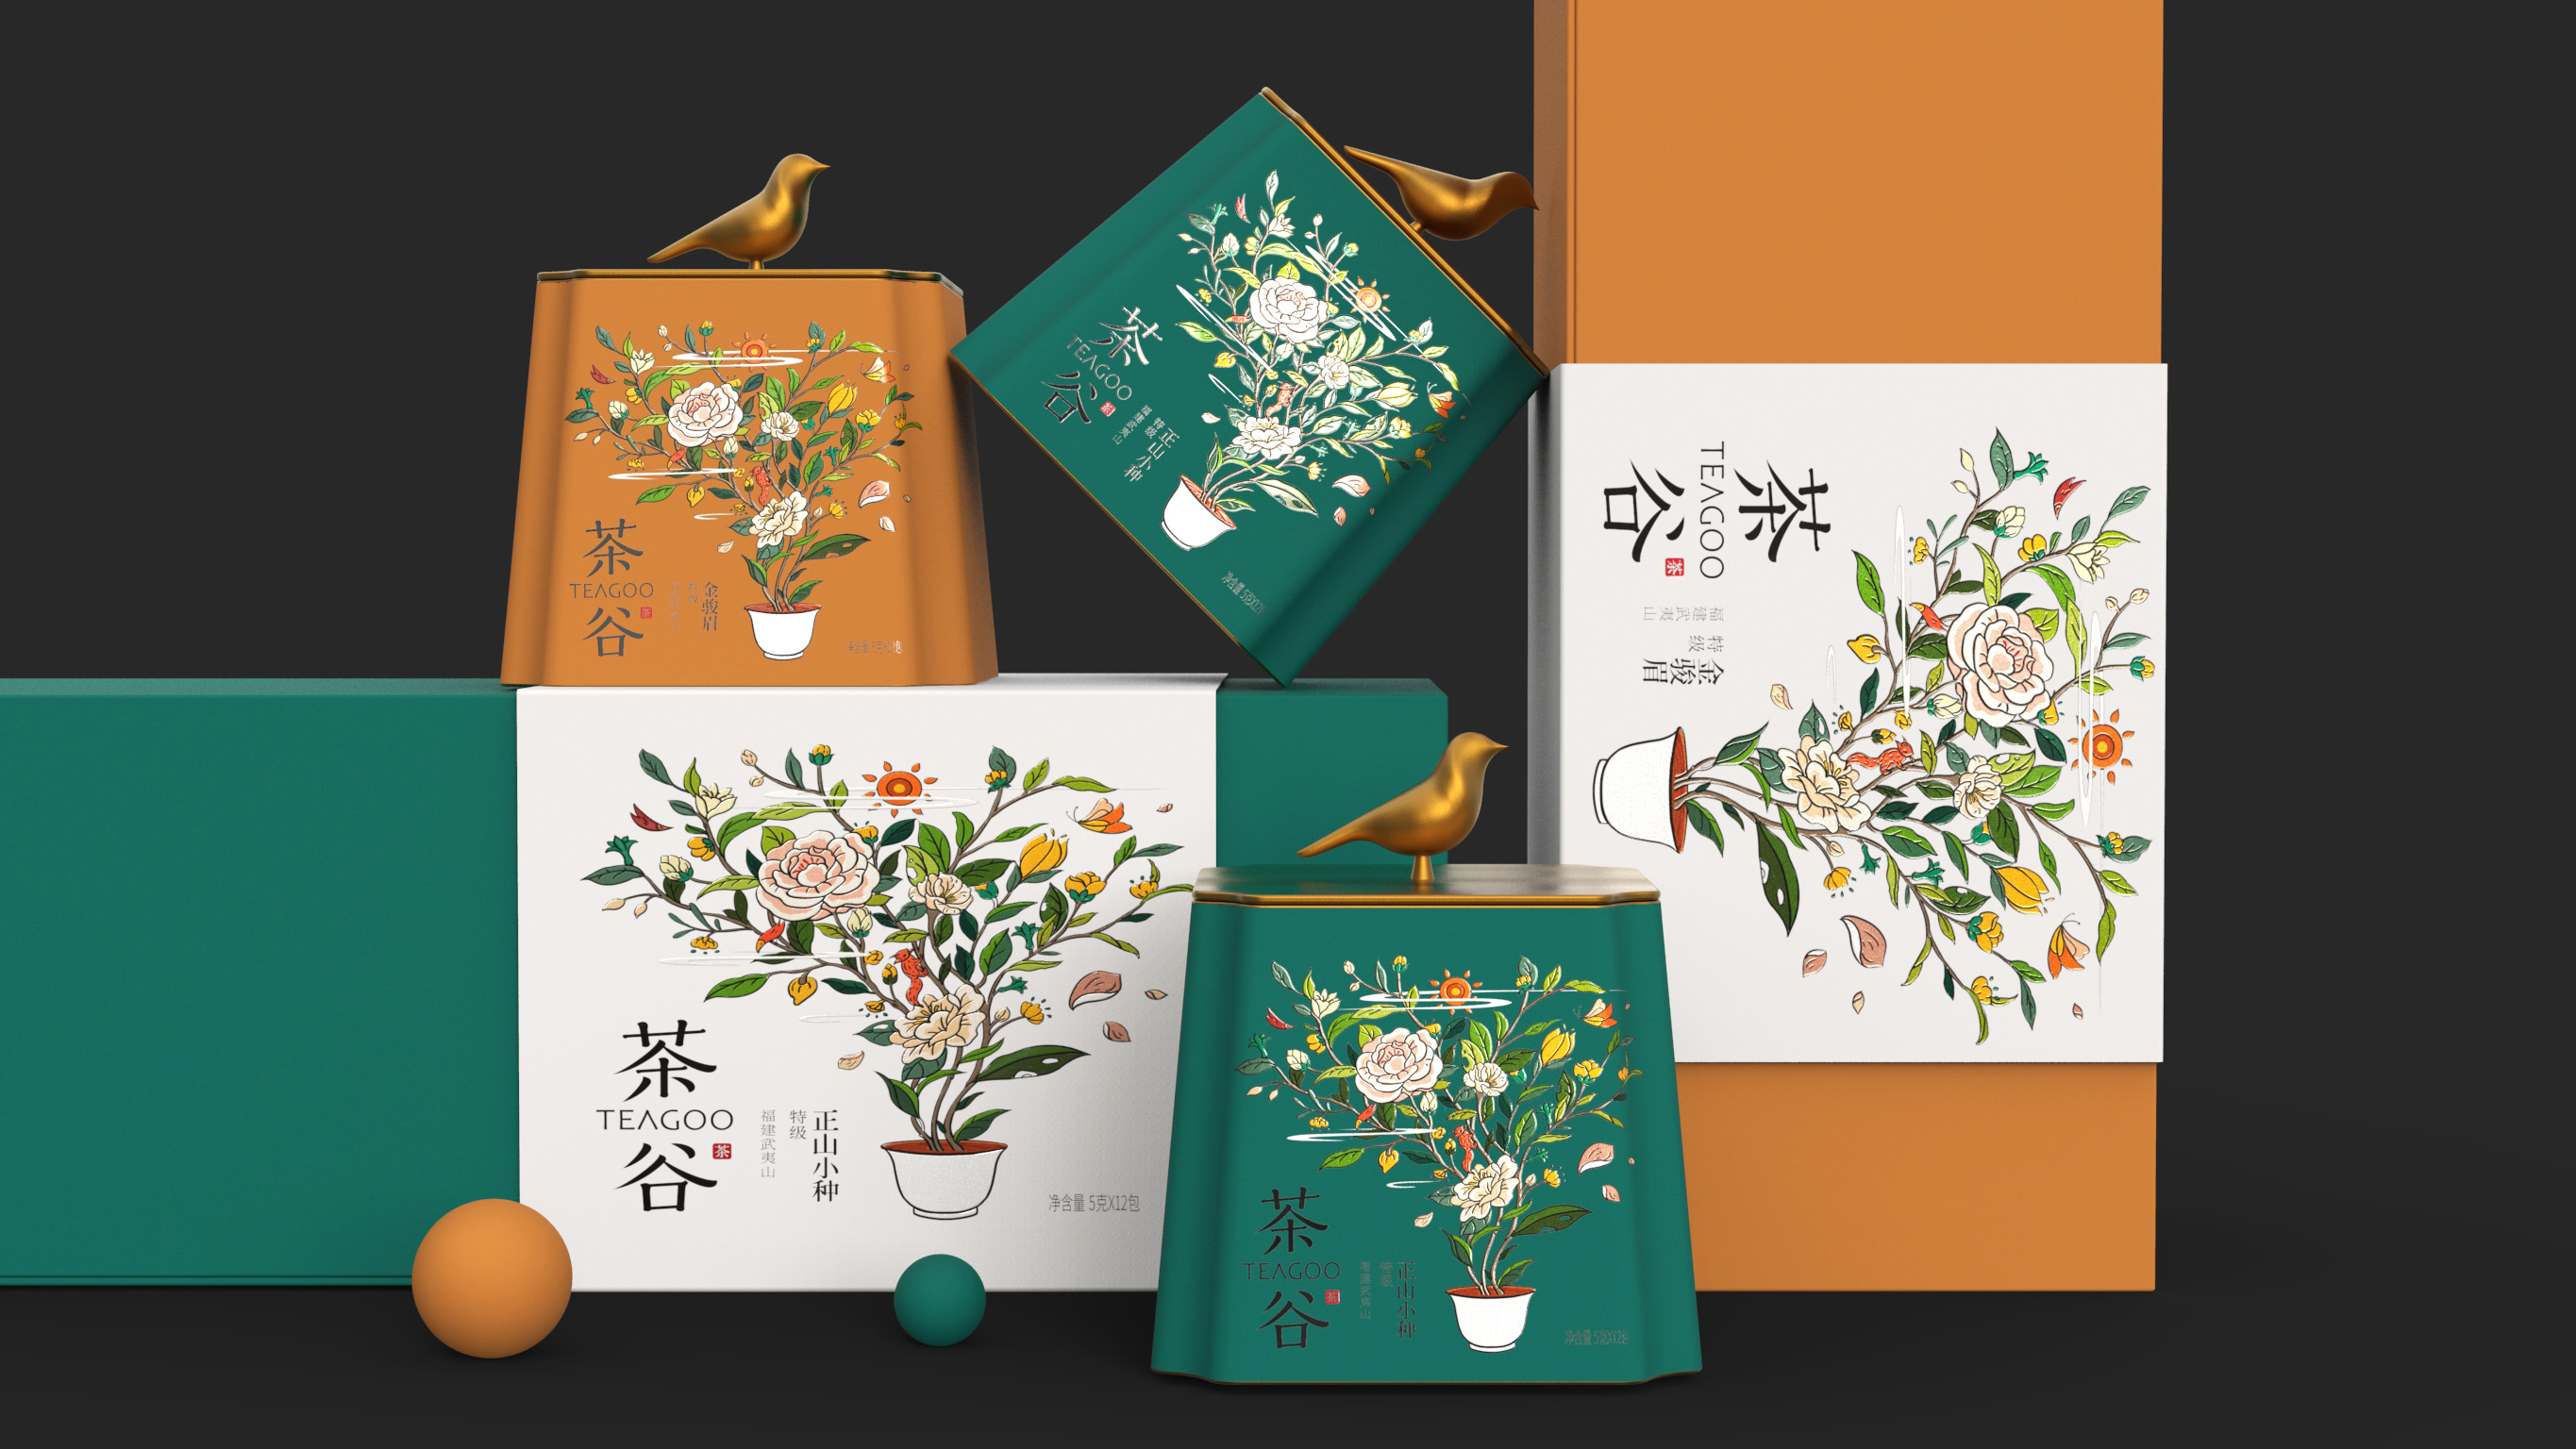 茶谷 TEAGOO｜茶品牌包装设计